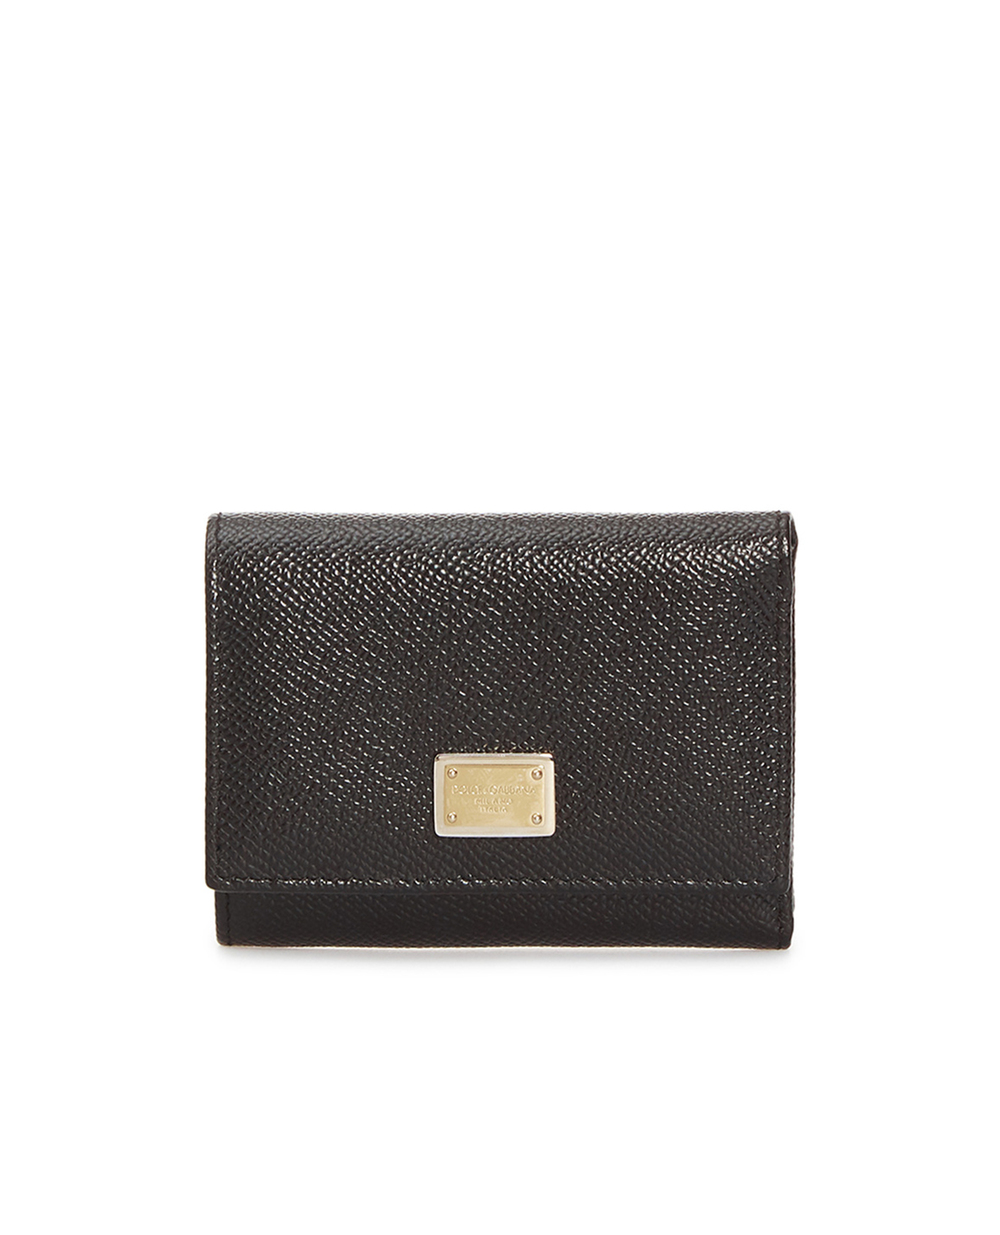 Кожаный кошелек Dolce&Gabbana BI0770-A1001, черный цвет • Купить в интернет-магазине Kameron